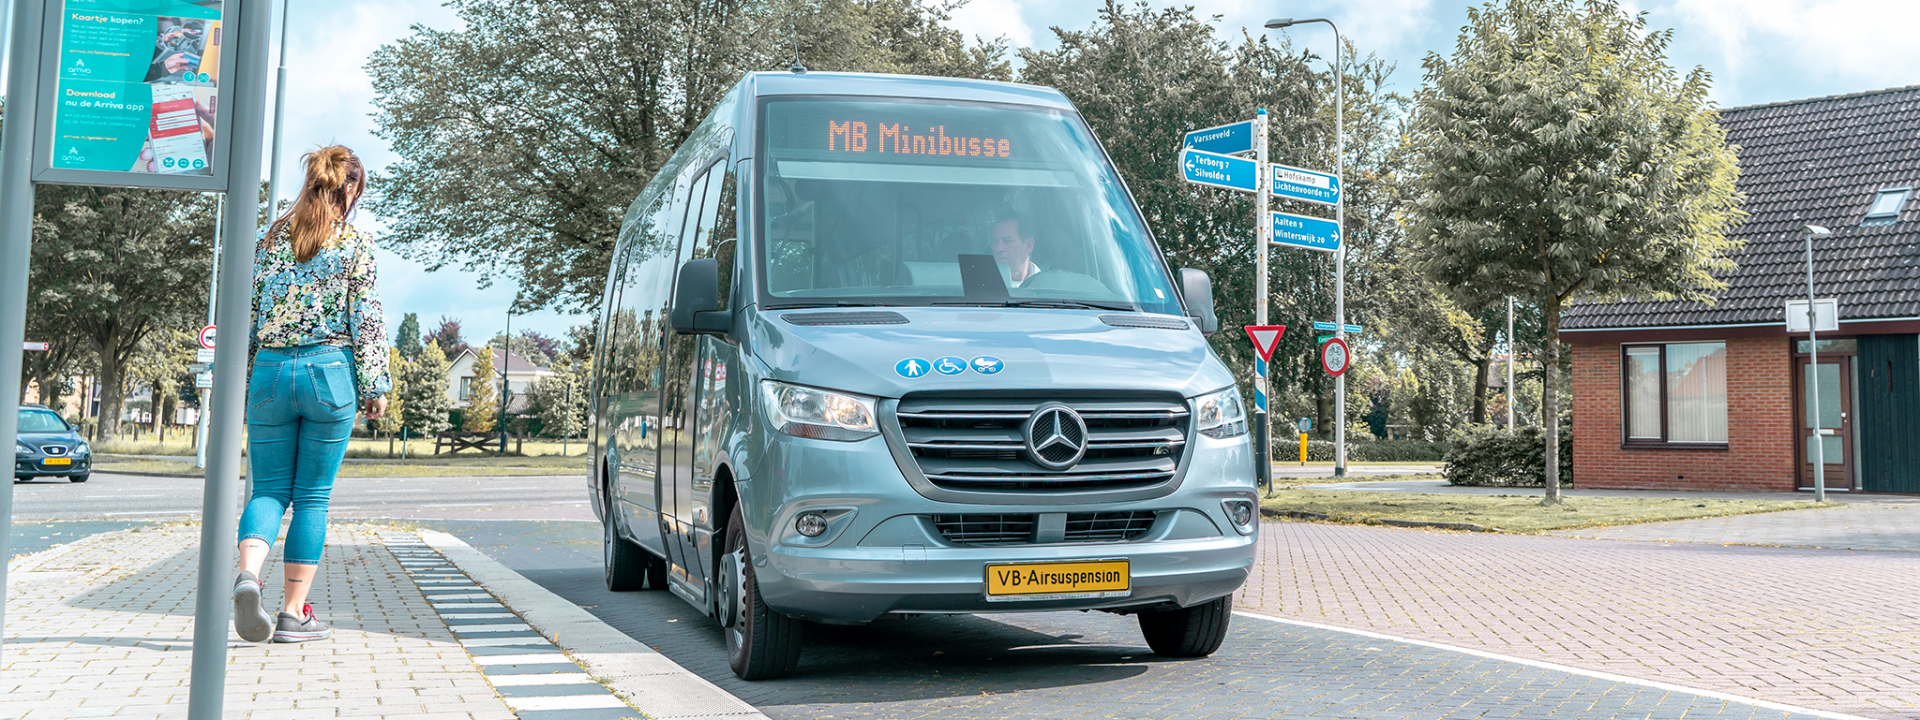 Foto: Mercedes-Benz Sprinter Minibus an der Bushaltestelle